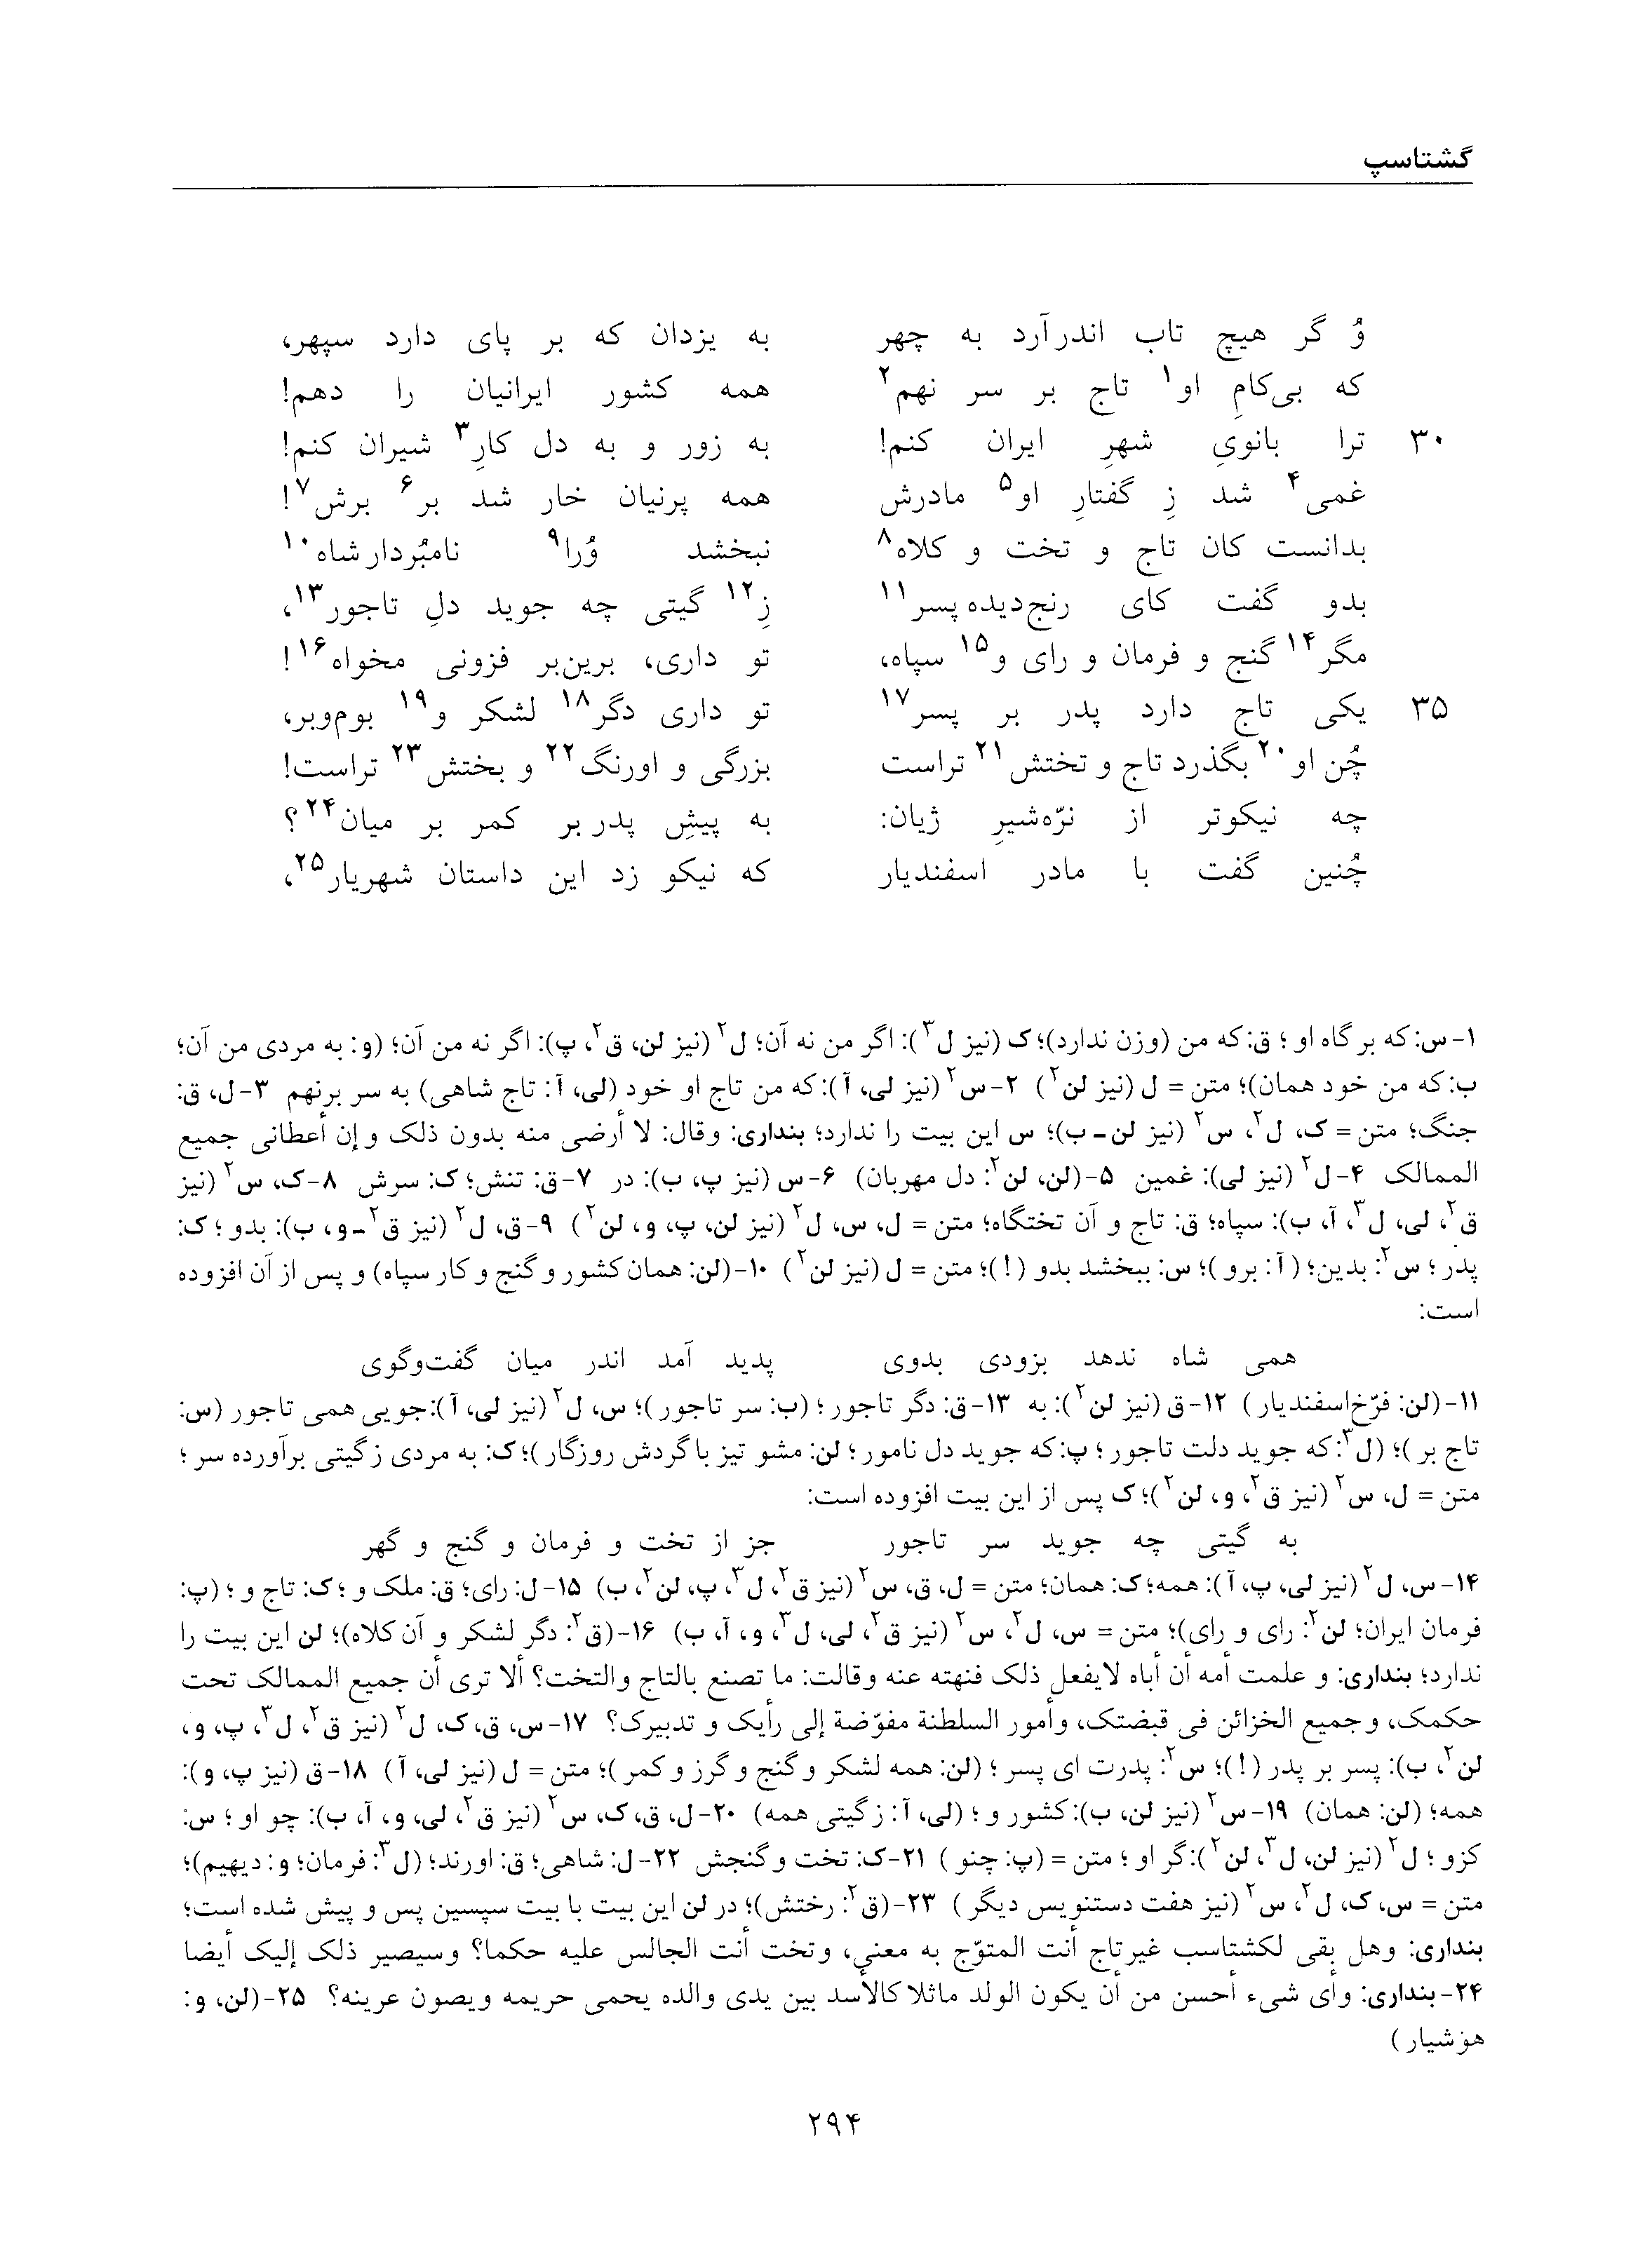 vol. 5, p. 294